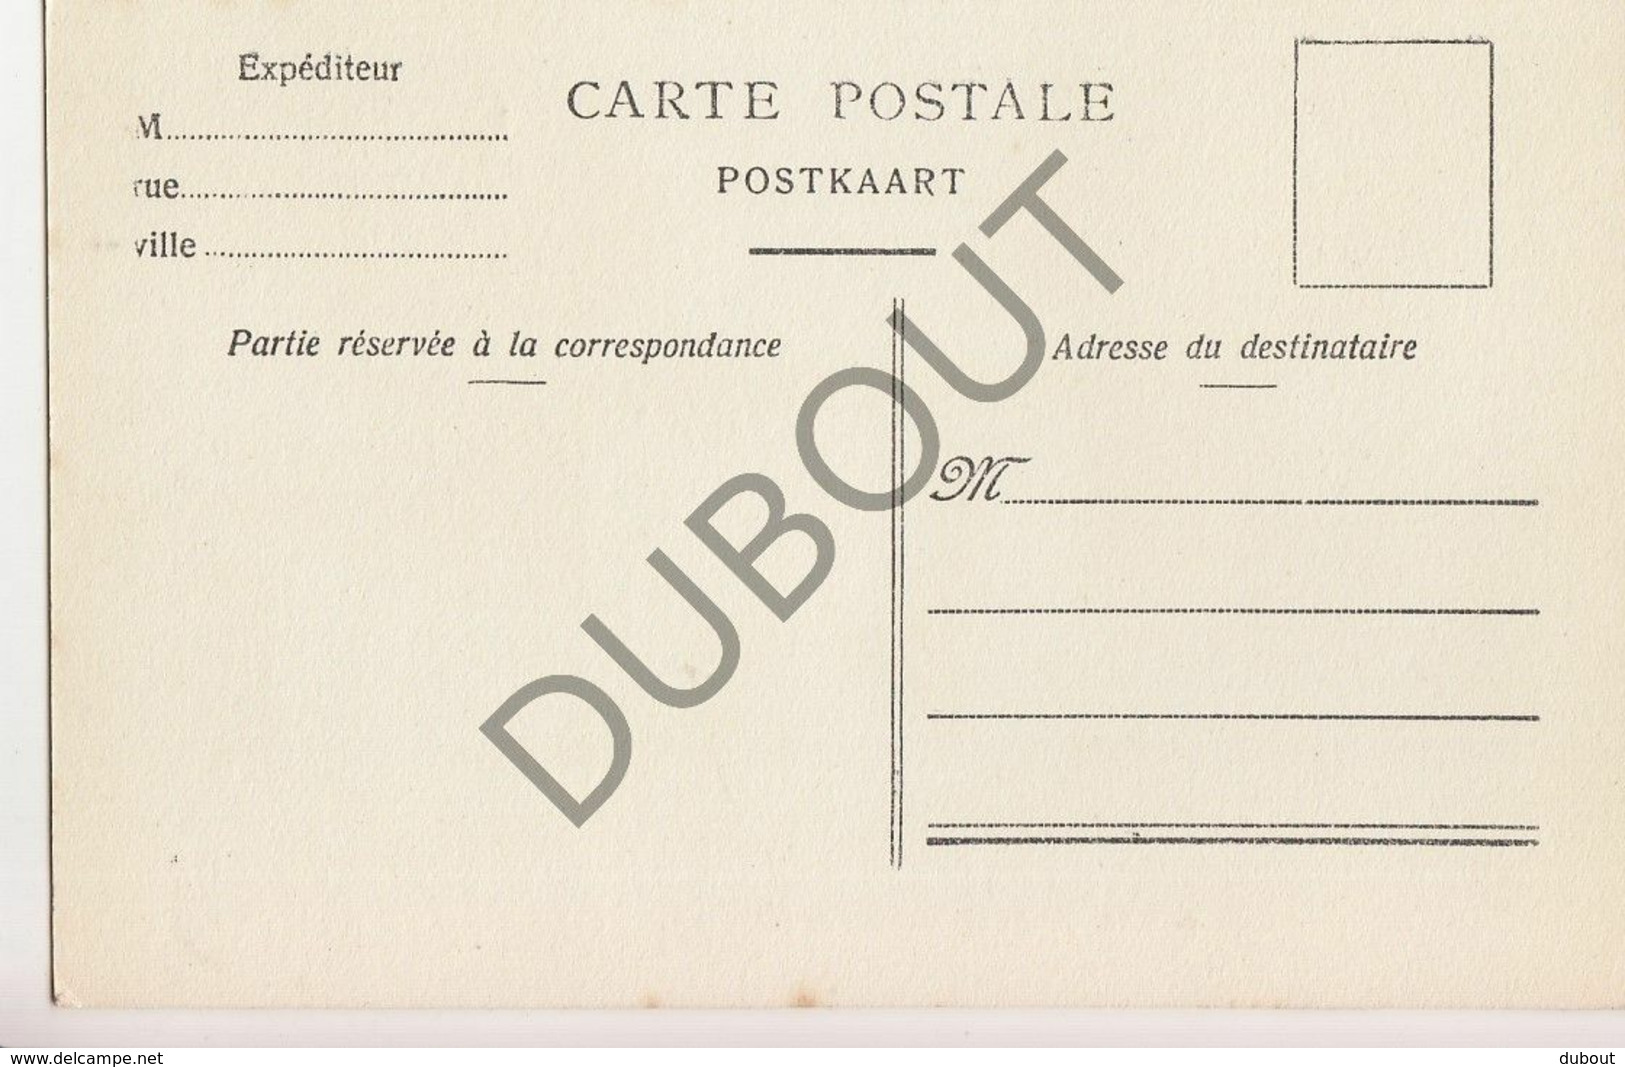 Postkaart-Carte Postale - BONLEZ - Entrée De L'avenue Du Château  (B810) - Chaumont-Gistoux